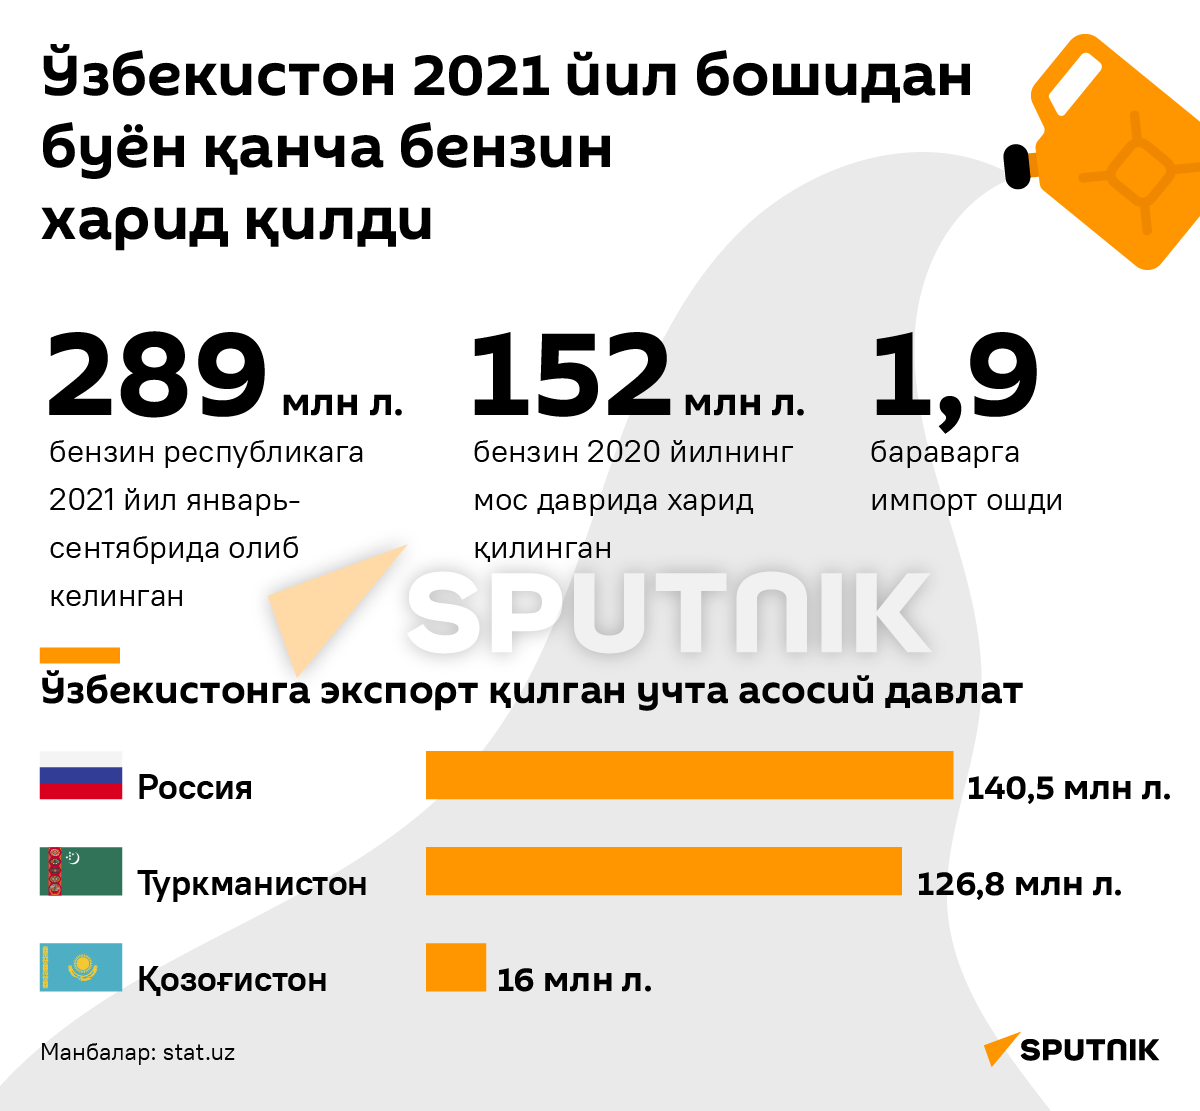 Сколько бензина закупил Узбекистан с начала 2021 года узб деск - Sputnik Ўзбекистон